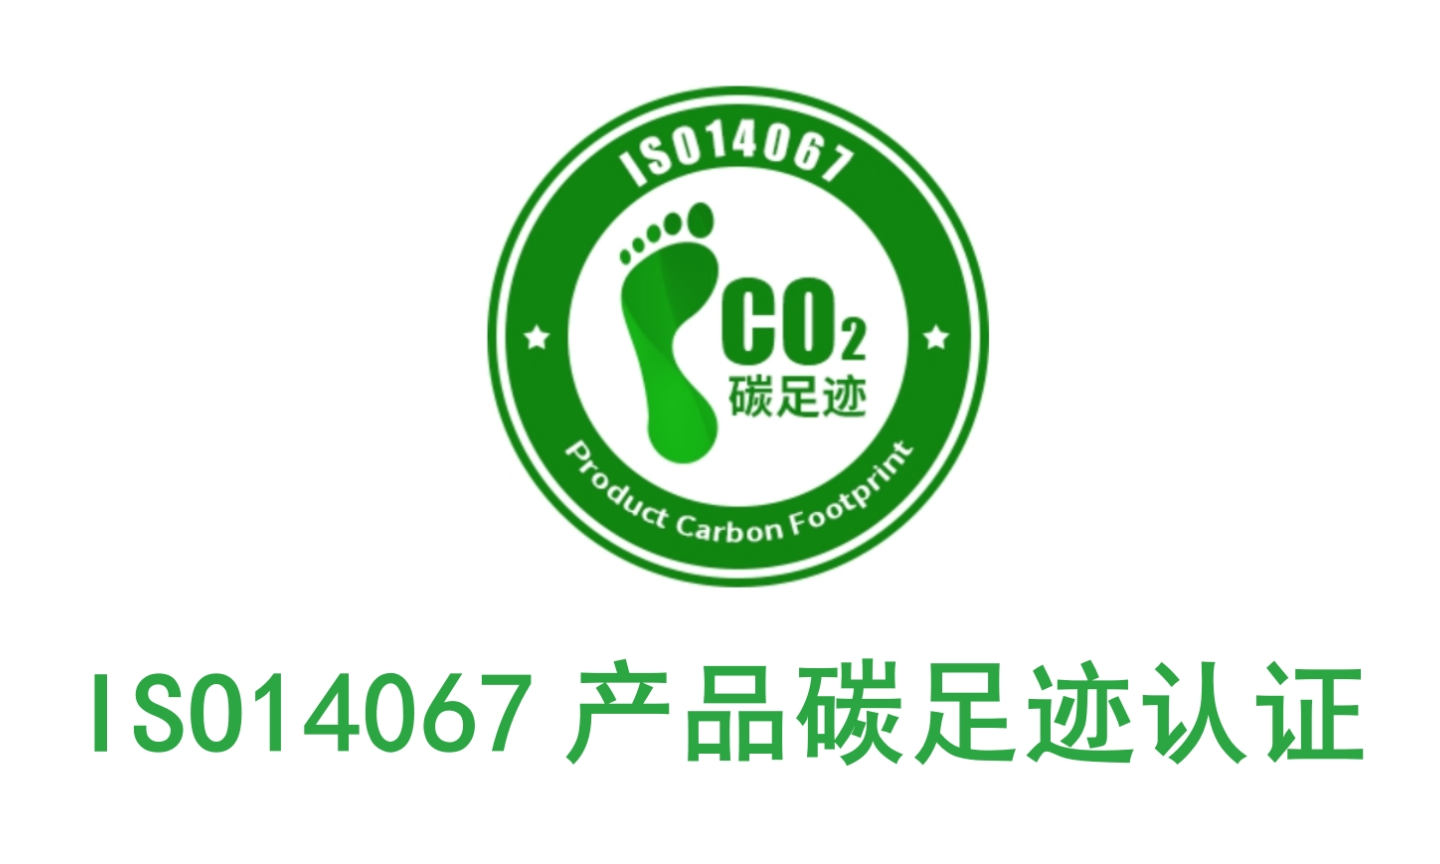 惠州专业碳足迹认证机构,碳足迹认证